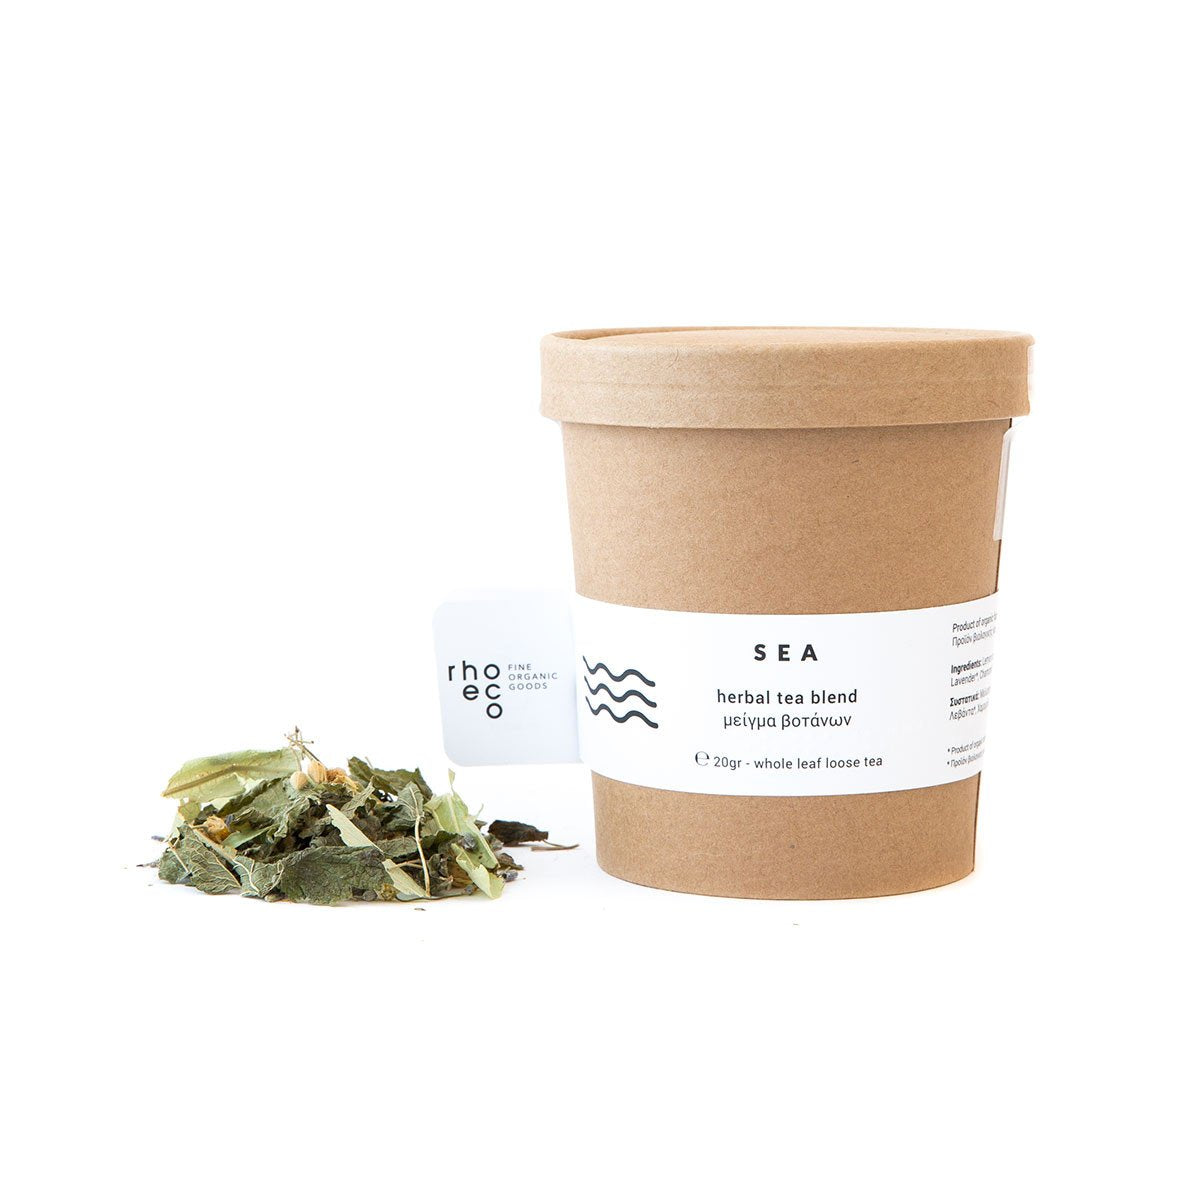 Sea Organic Herbal Tea Blend - The Future Kept - 1